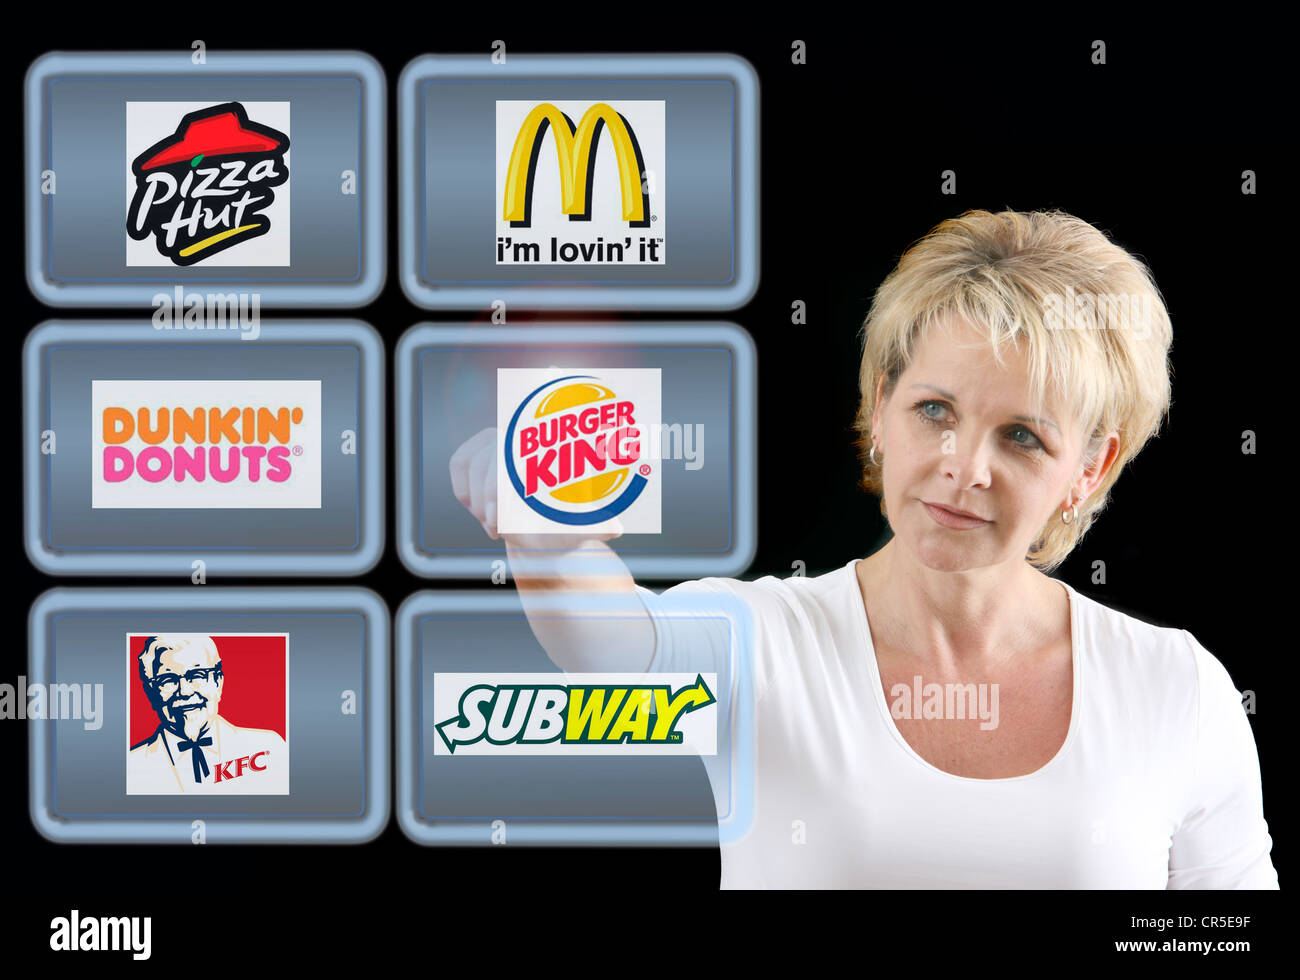 Virtuelle Bildschirme, touch-Screens. Fast Food-Ketten und Restaurants. Symbolisches Bild. Stockfoto